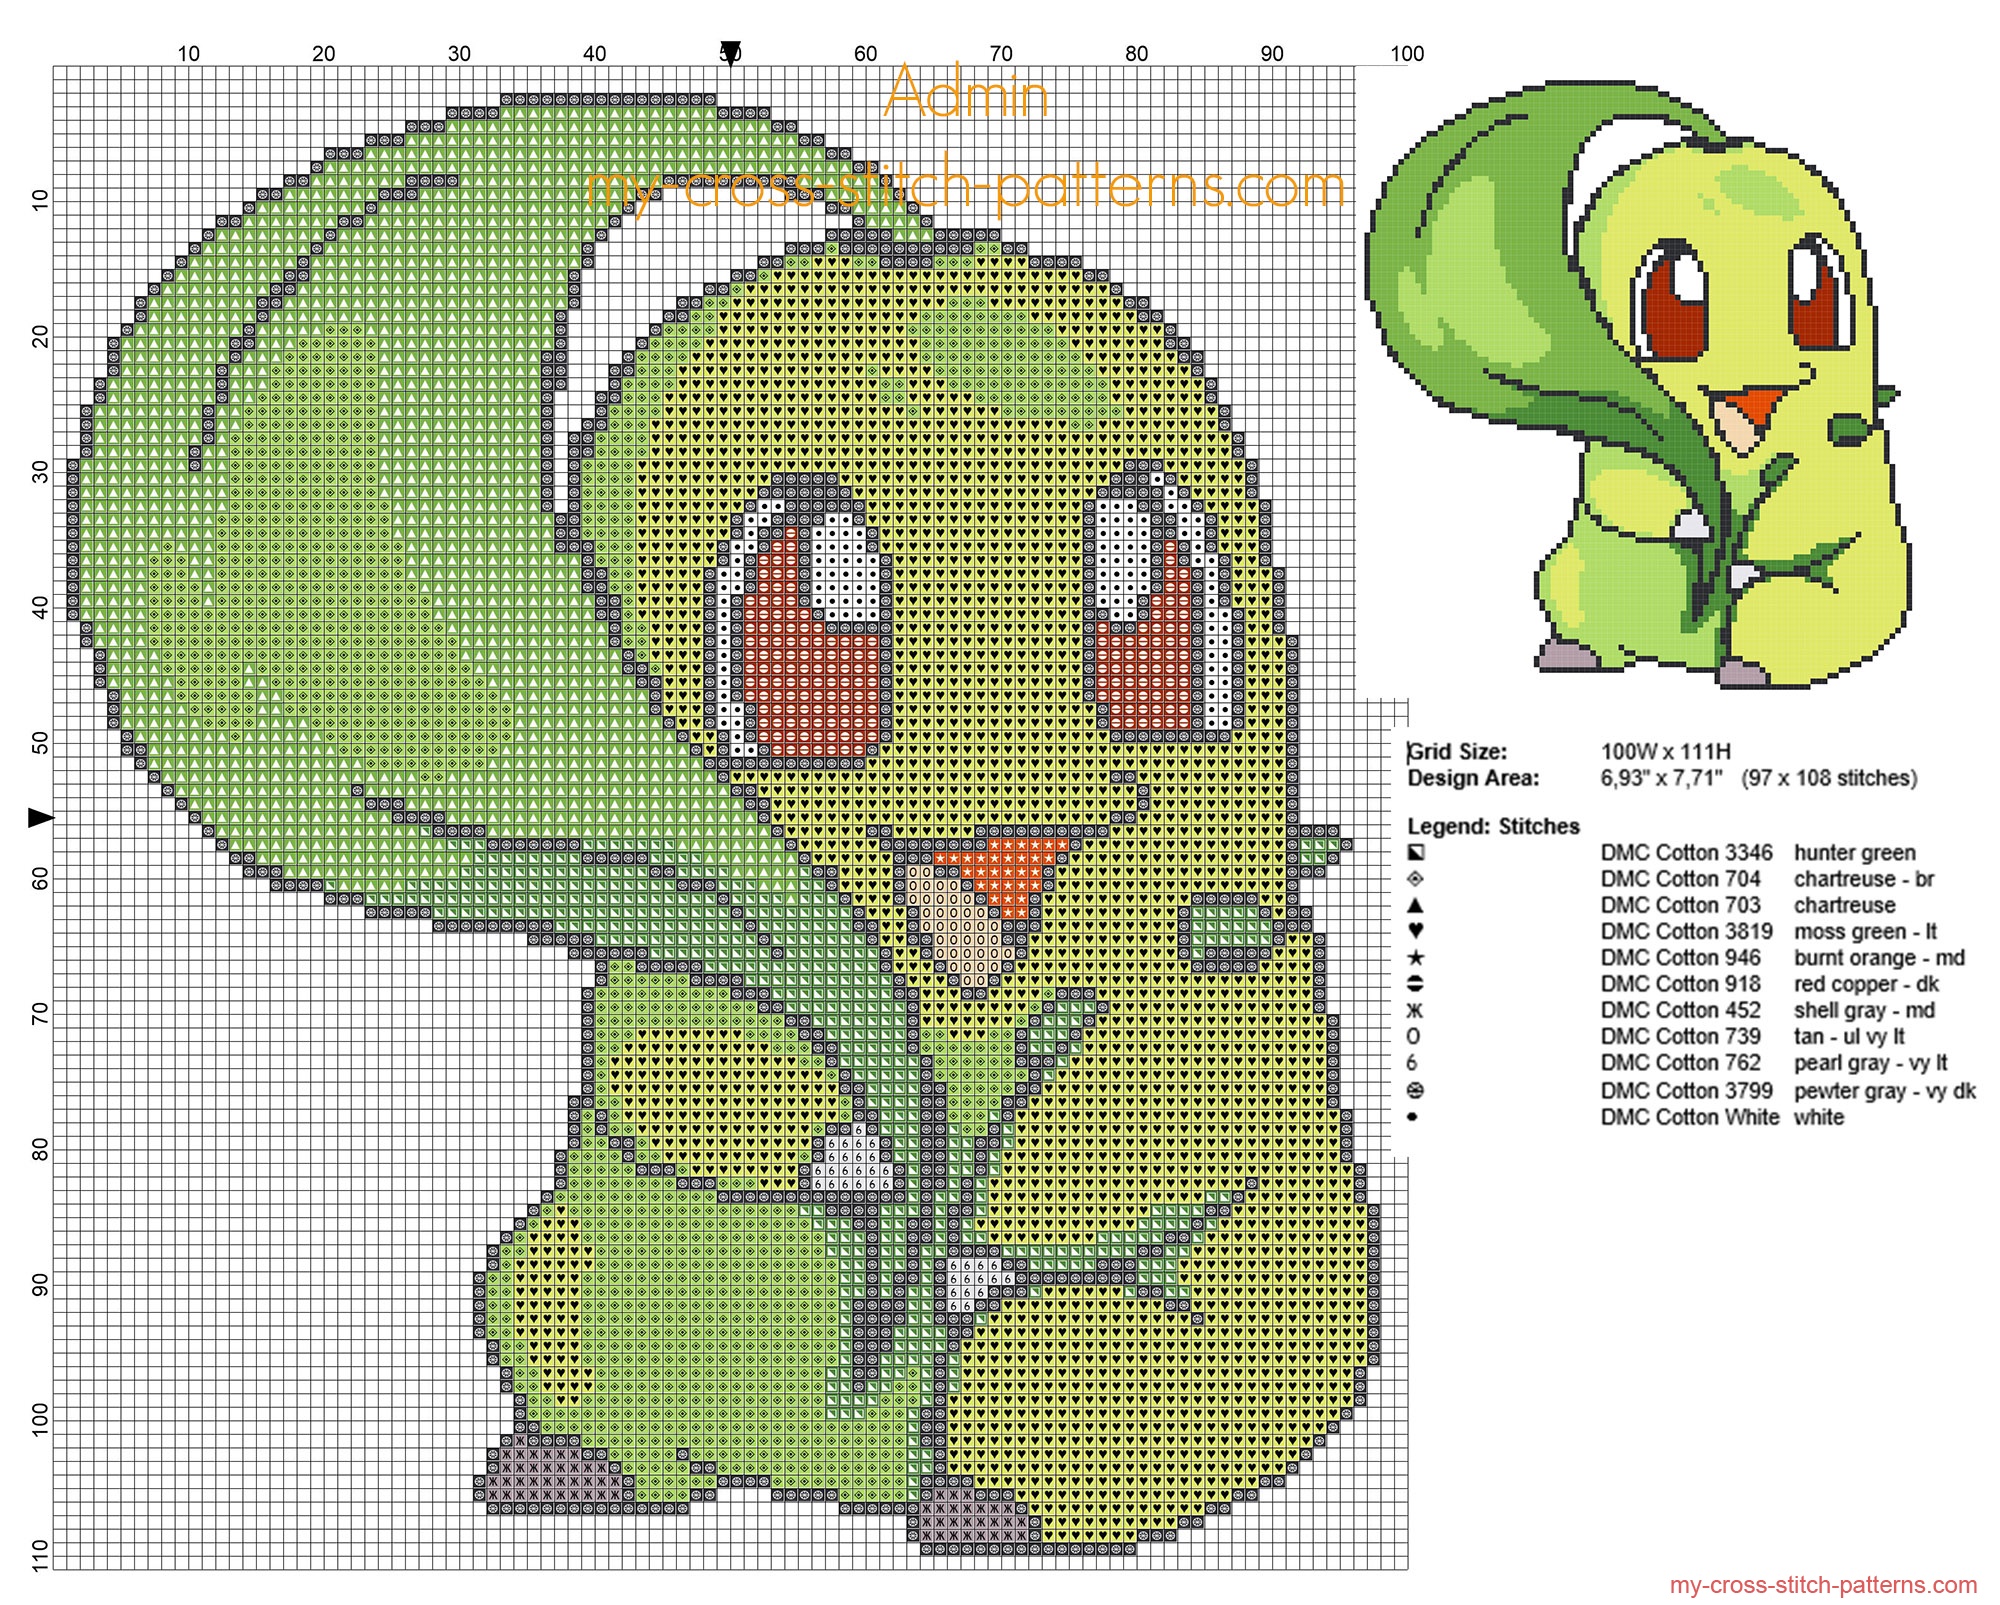 chikorita_pokemon_152_second_generation_free_cross_stitch_pattern